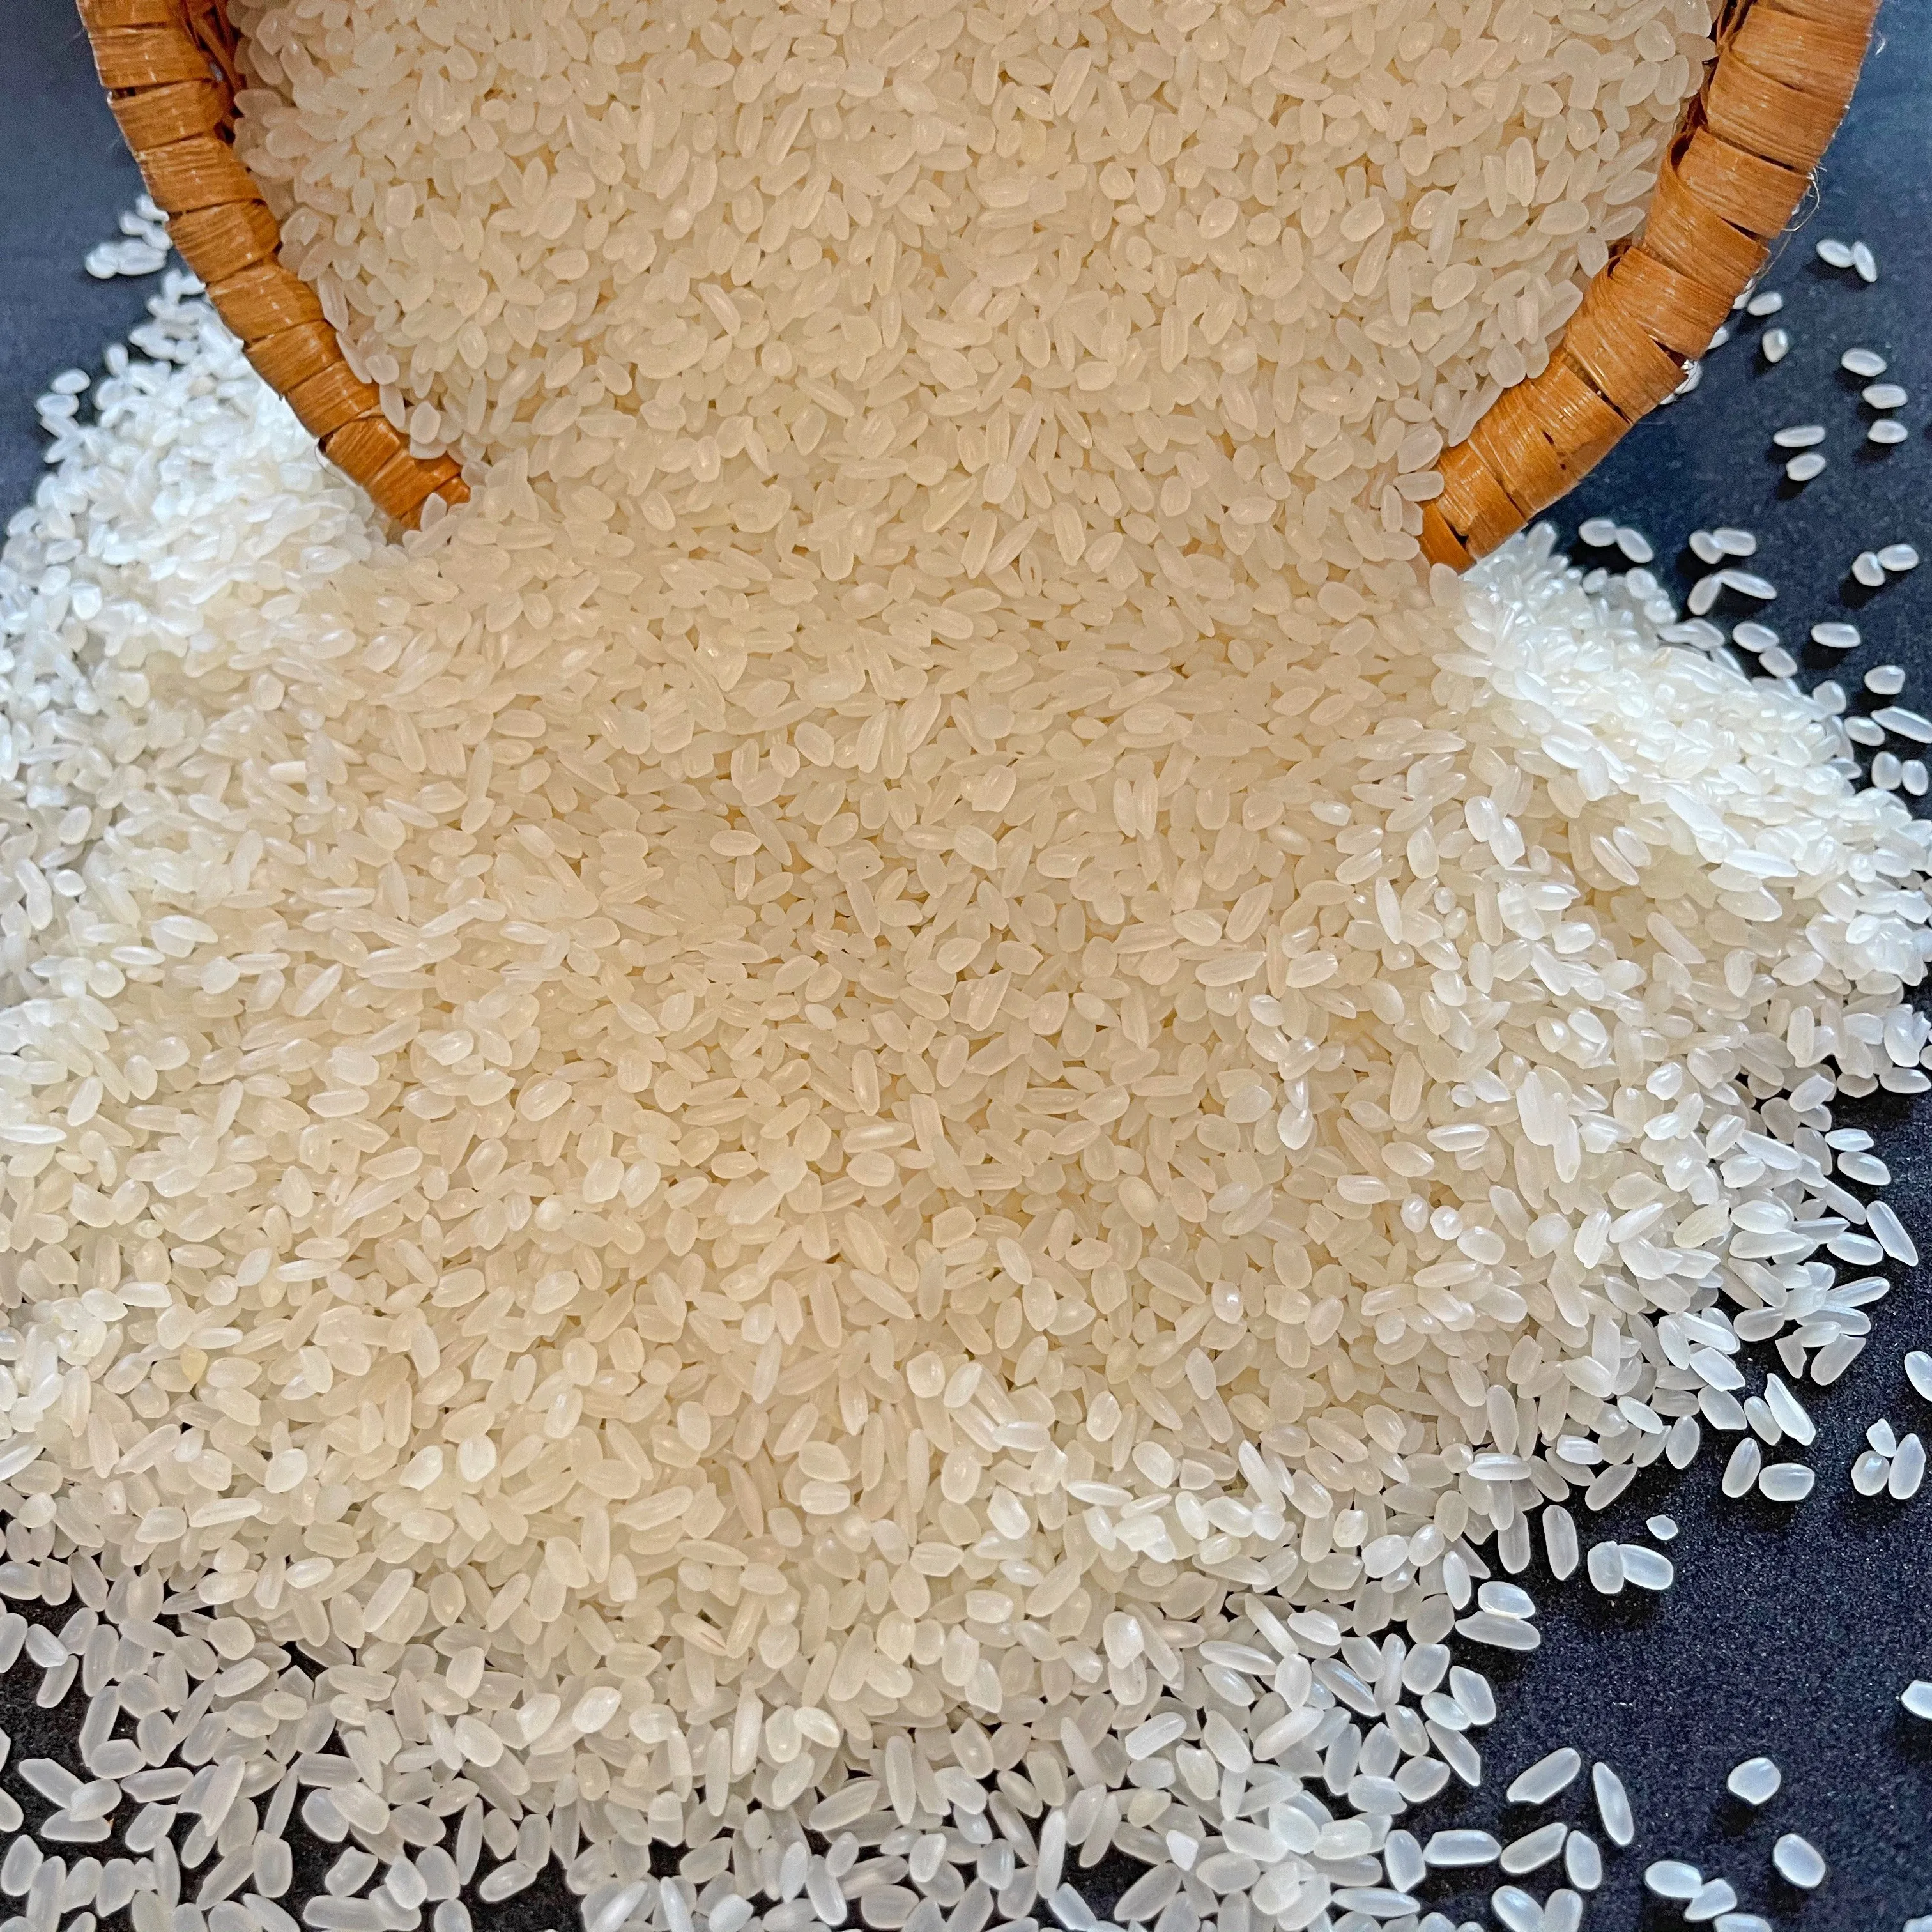 Vietnam Beste Qualität Calrose Reis haben günstigen Preis (Mobile/ WA: 84986778999 Mr. David Director)